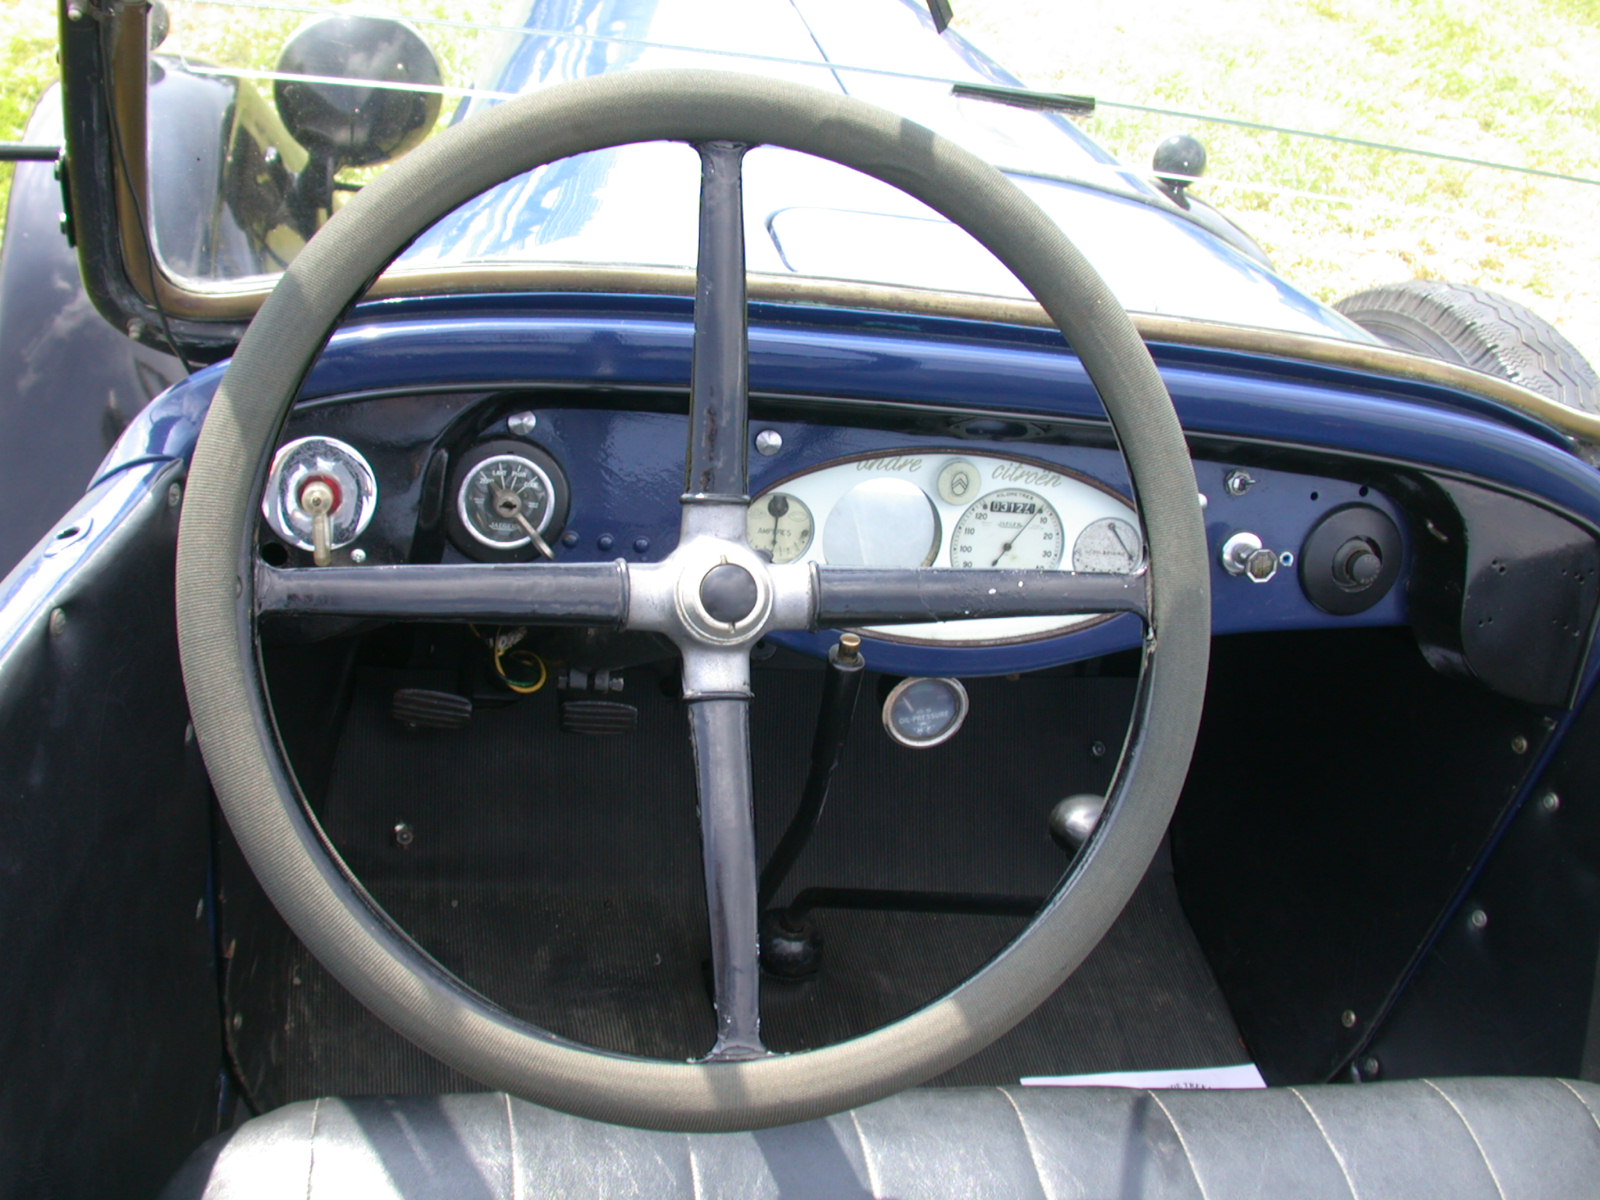 steer steering wheel sterringwheel old oldtimer round dashboard racing car driver seat driver's